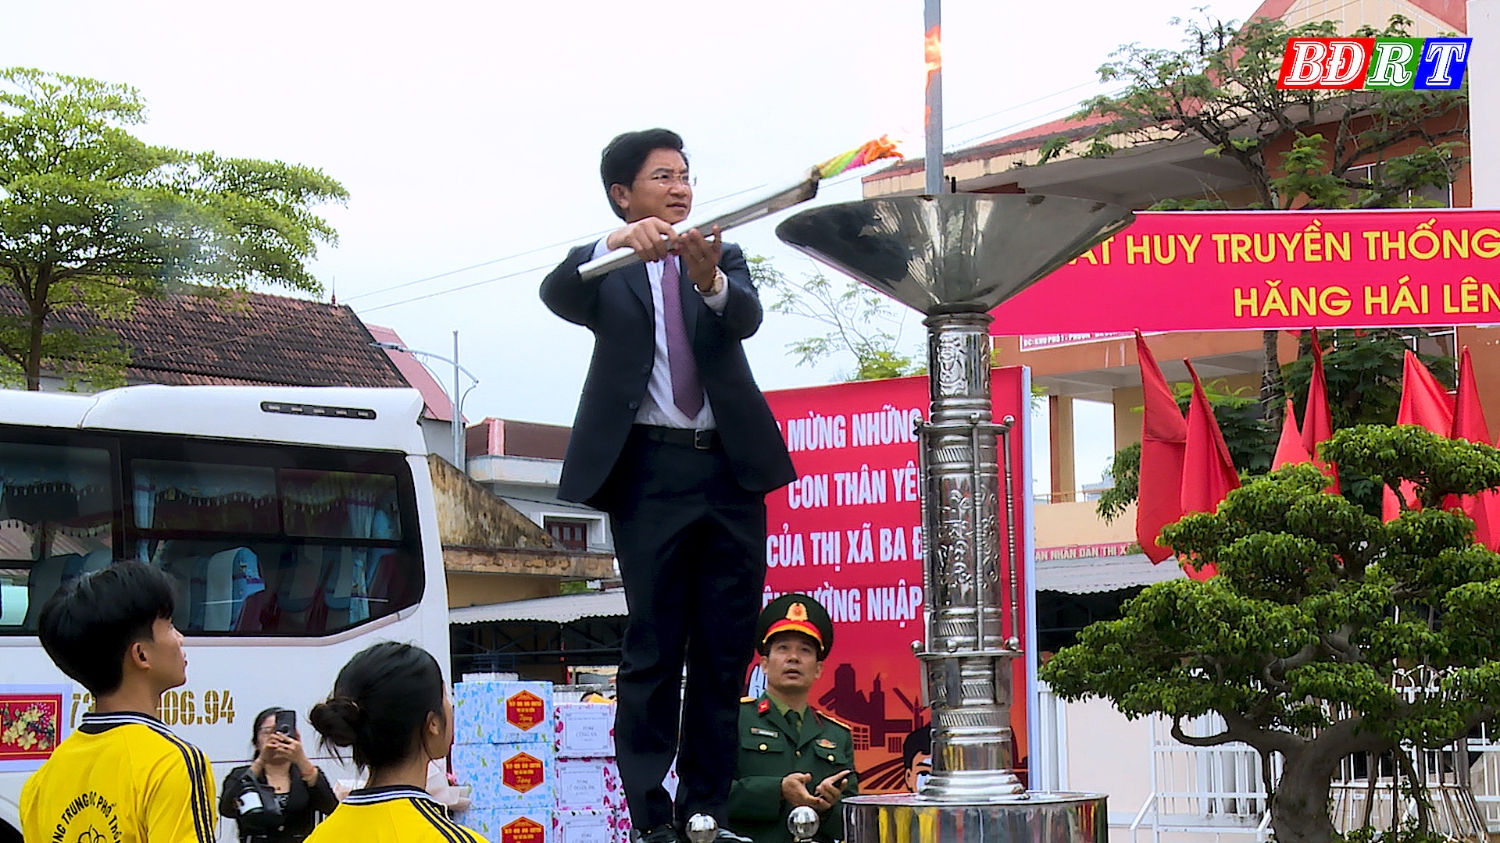 3 Đồng chí Bí thư Thị ủy Ba Đồn thắp lửa truyển thống tại buổi lễ giao nhận quân